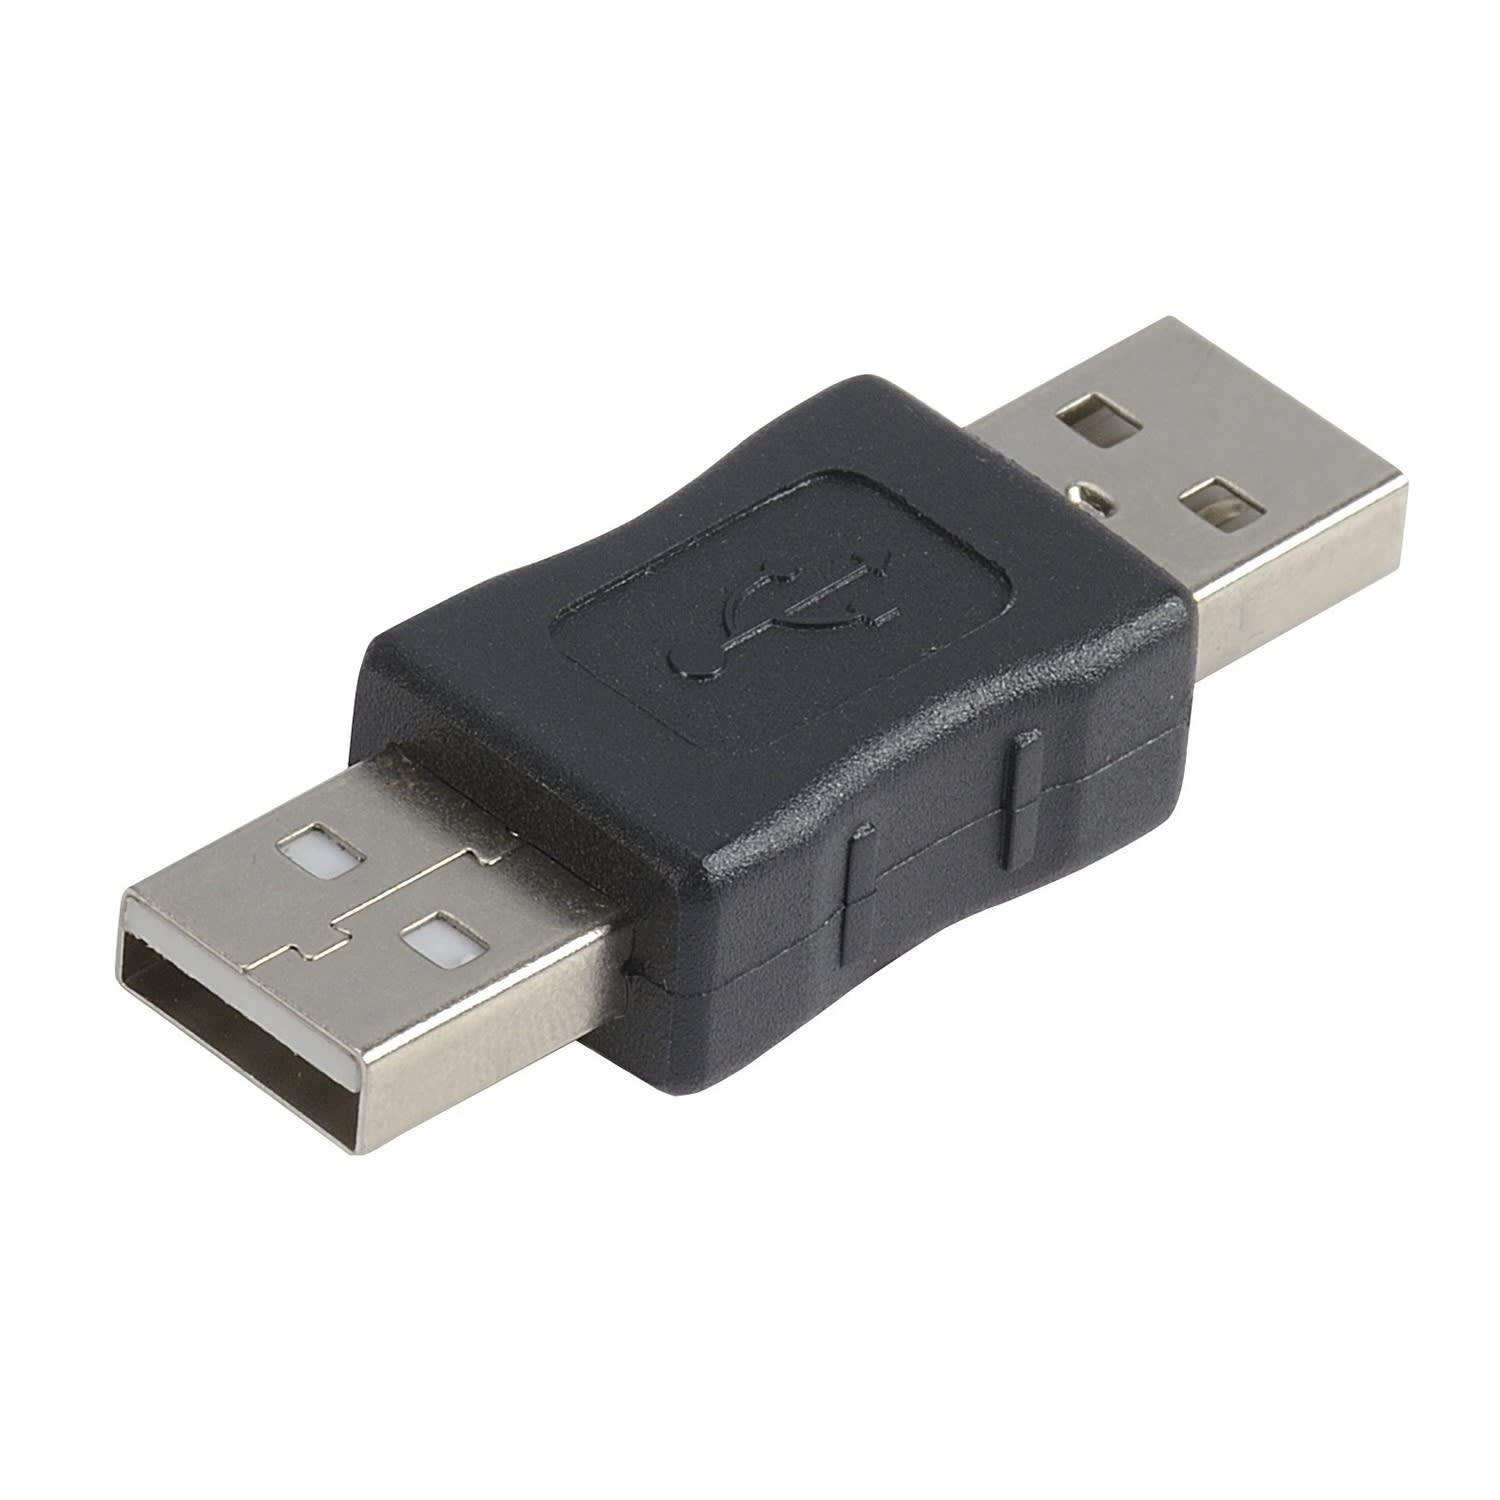 Erard - Adaptateur USB 2.0 - A Mâle / Mâle, couleur noire